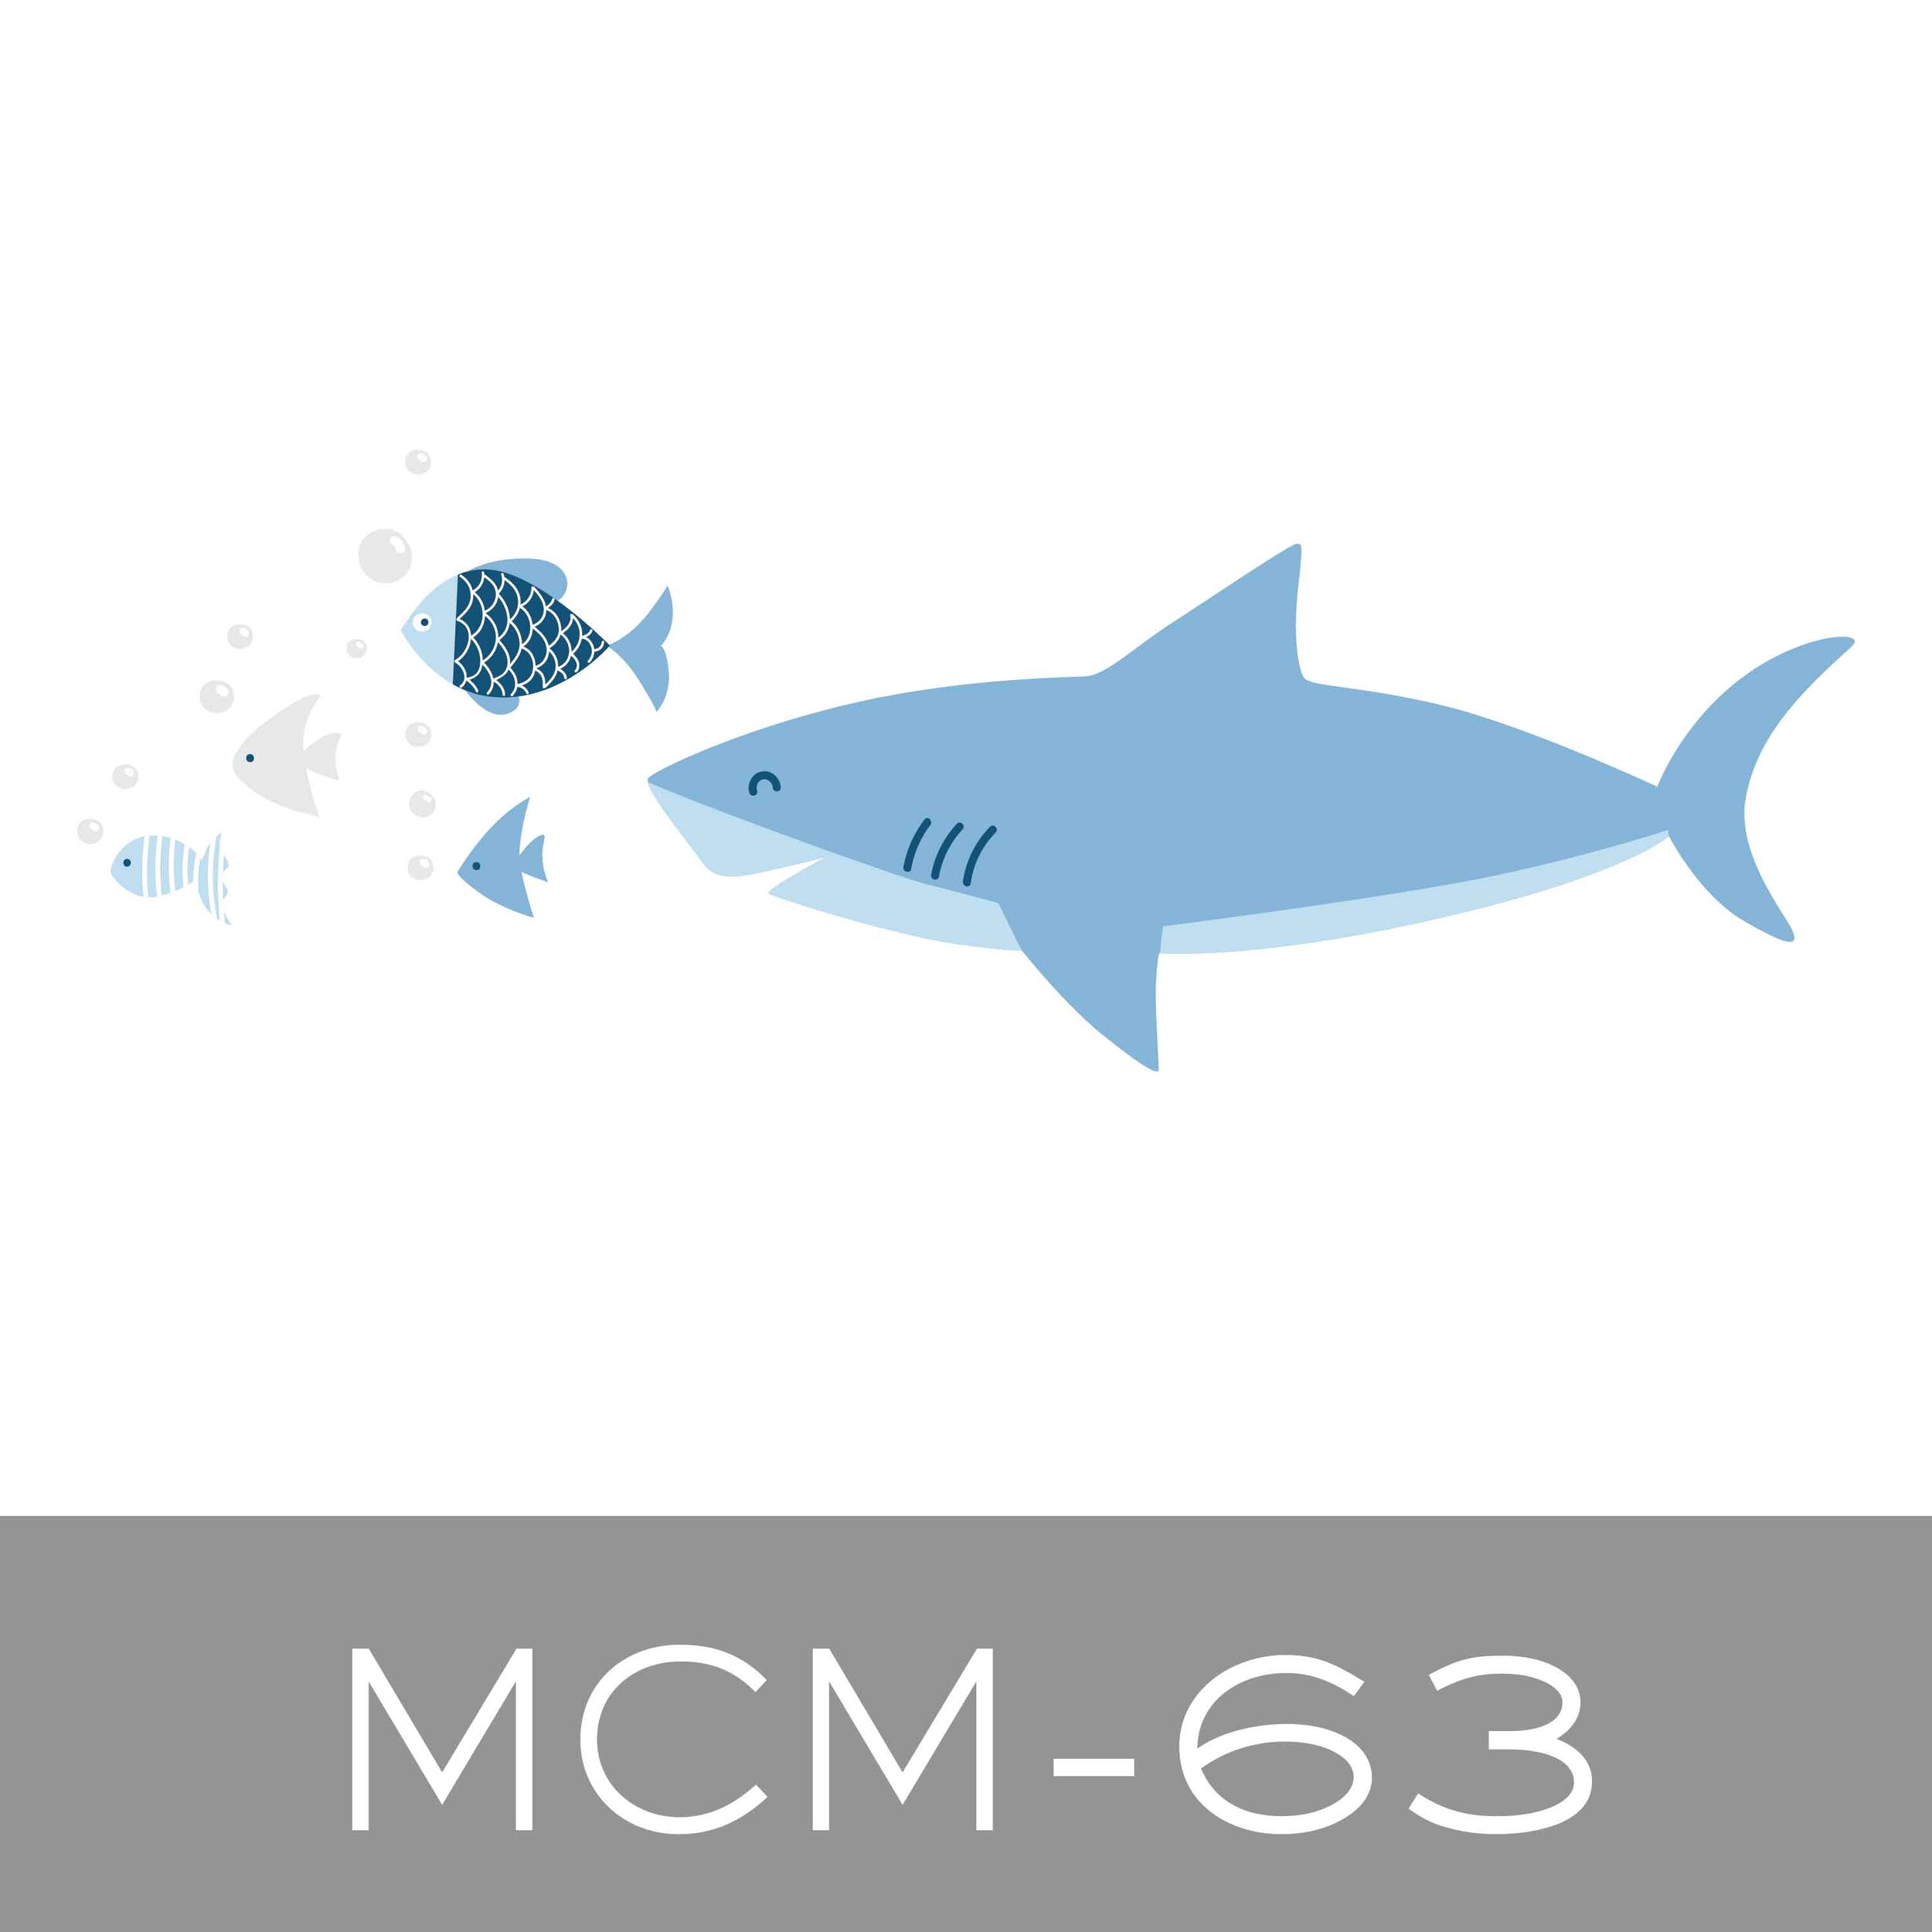 MCM-63.jpg